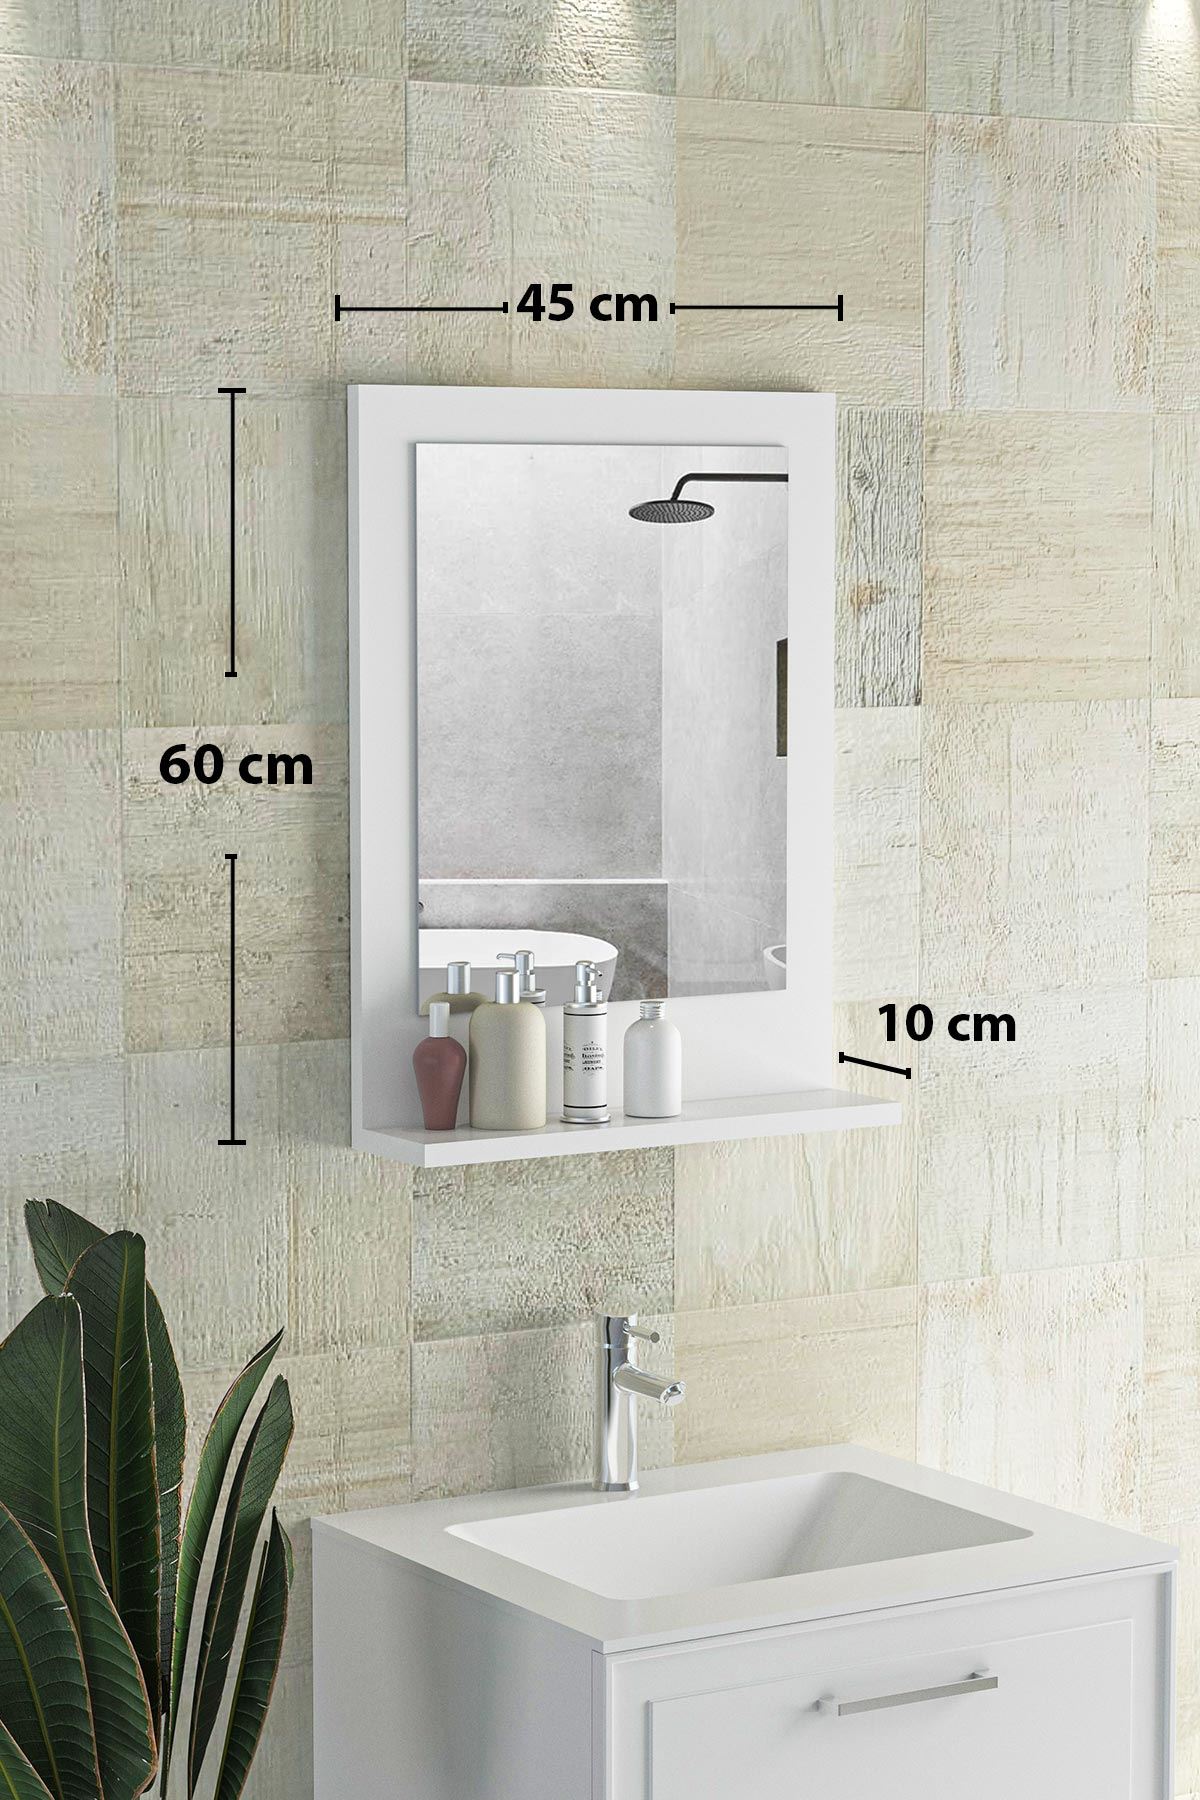 Bofigo 45x60 Cm Verona Banyo Rafı Lavabo Rafı Aynalı Raf Banyo Aynası Beyaz